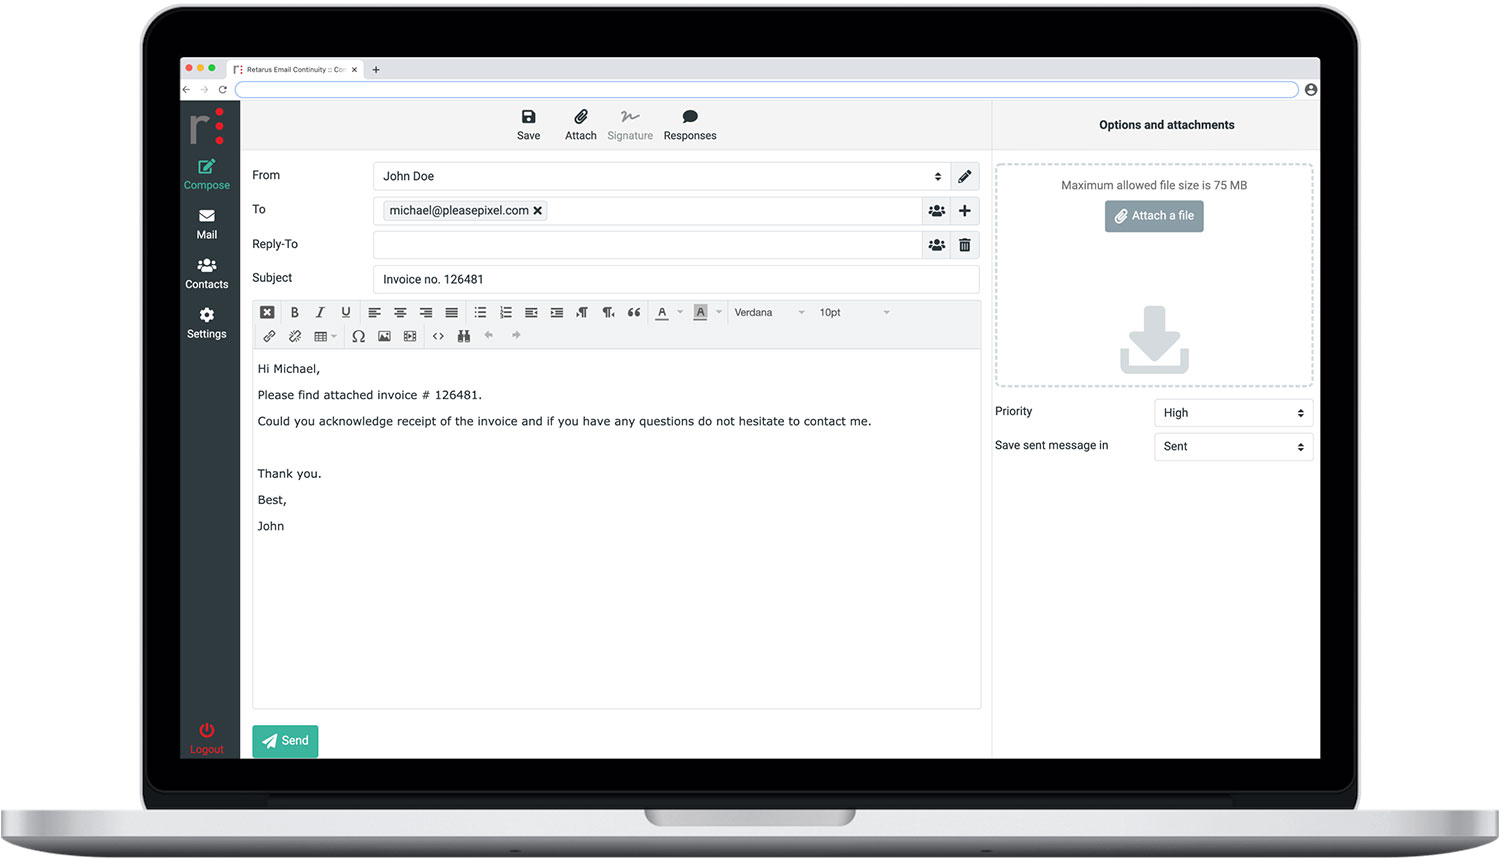 Compose - Retarus Email Continuity Desktop UI